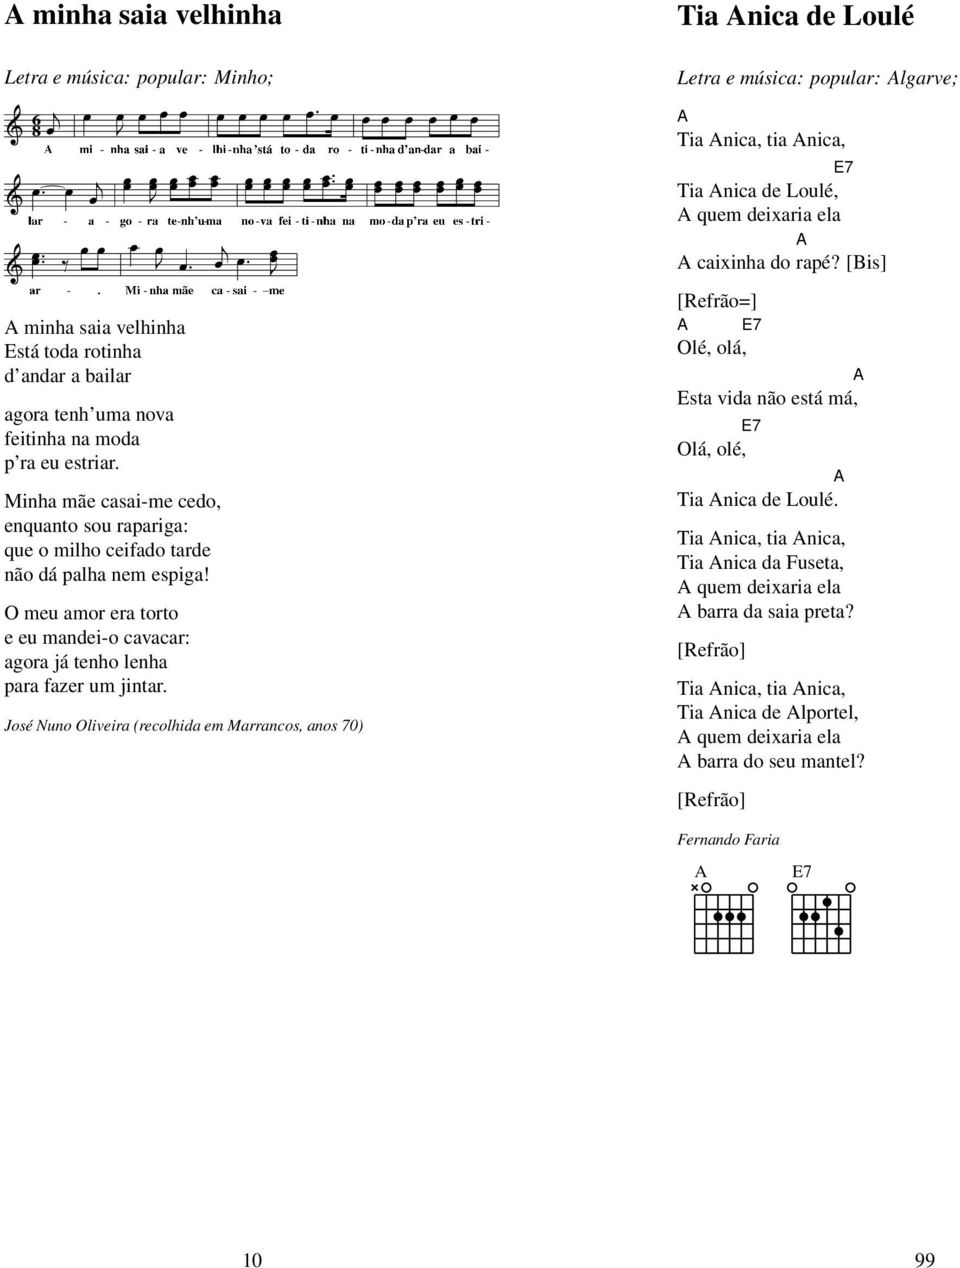 Música Popular. Arquivo de música de língua portuguesa 26 de Abril de PDF  Free Download